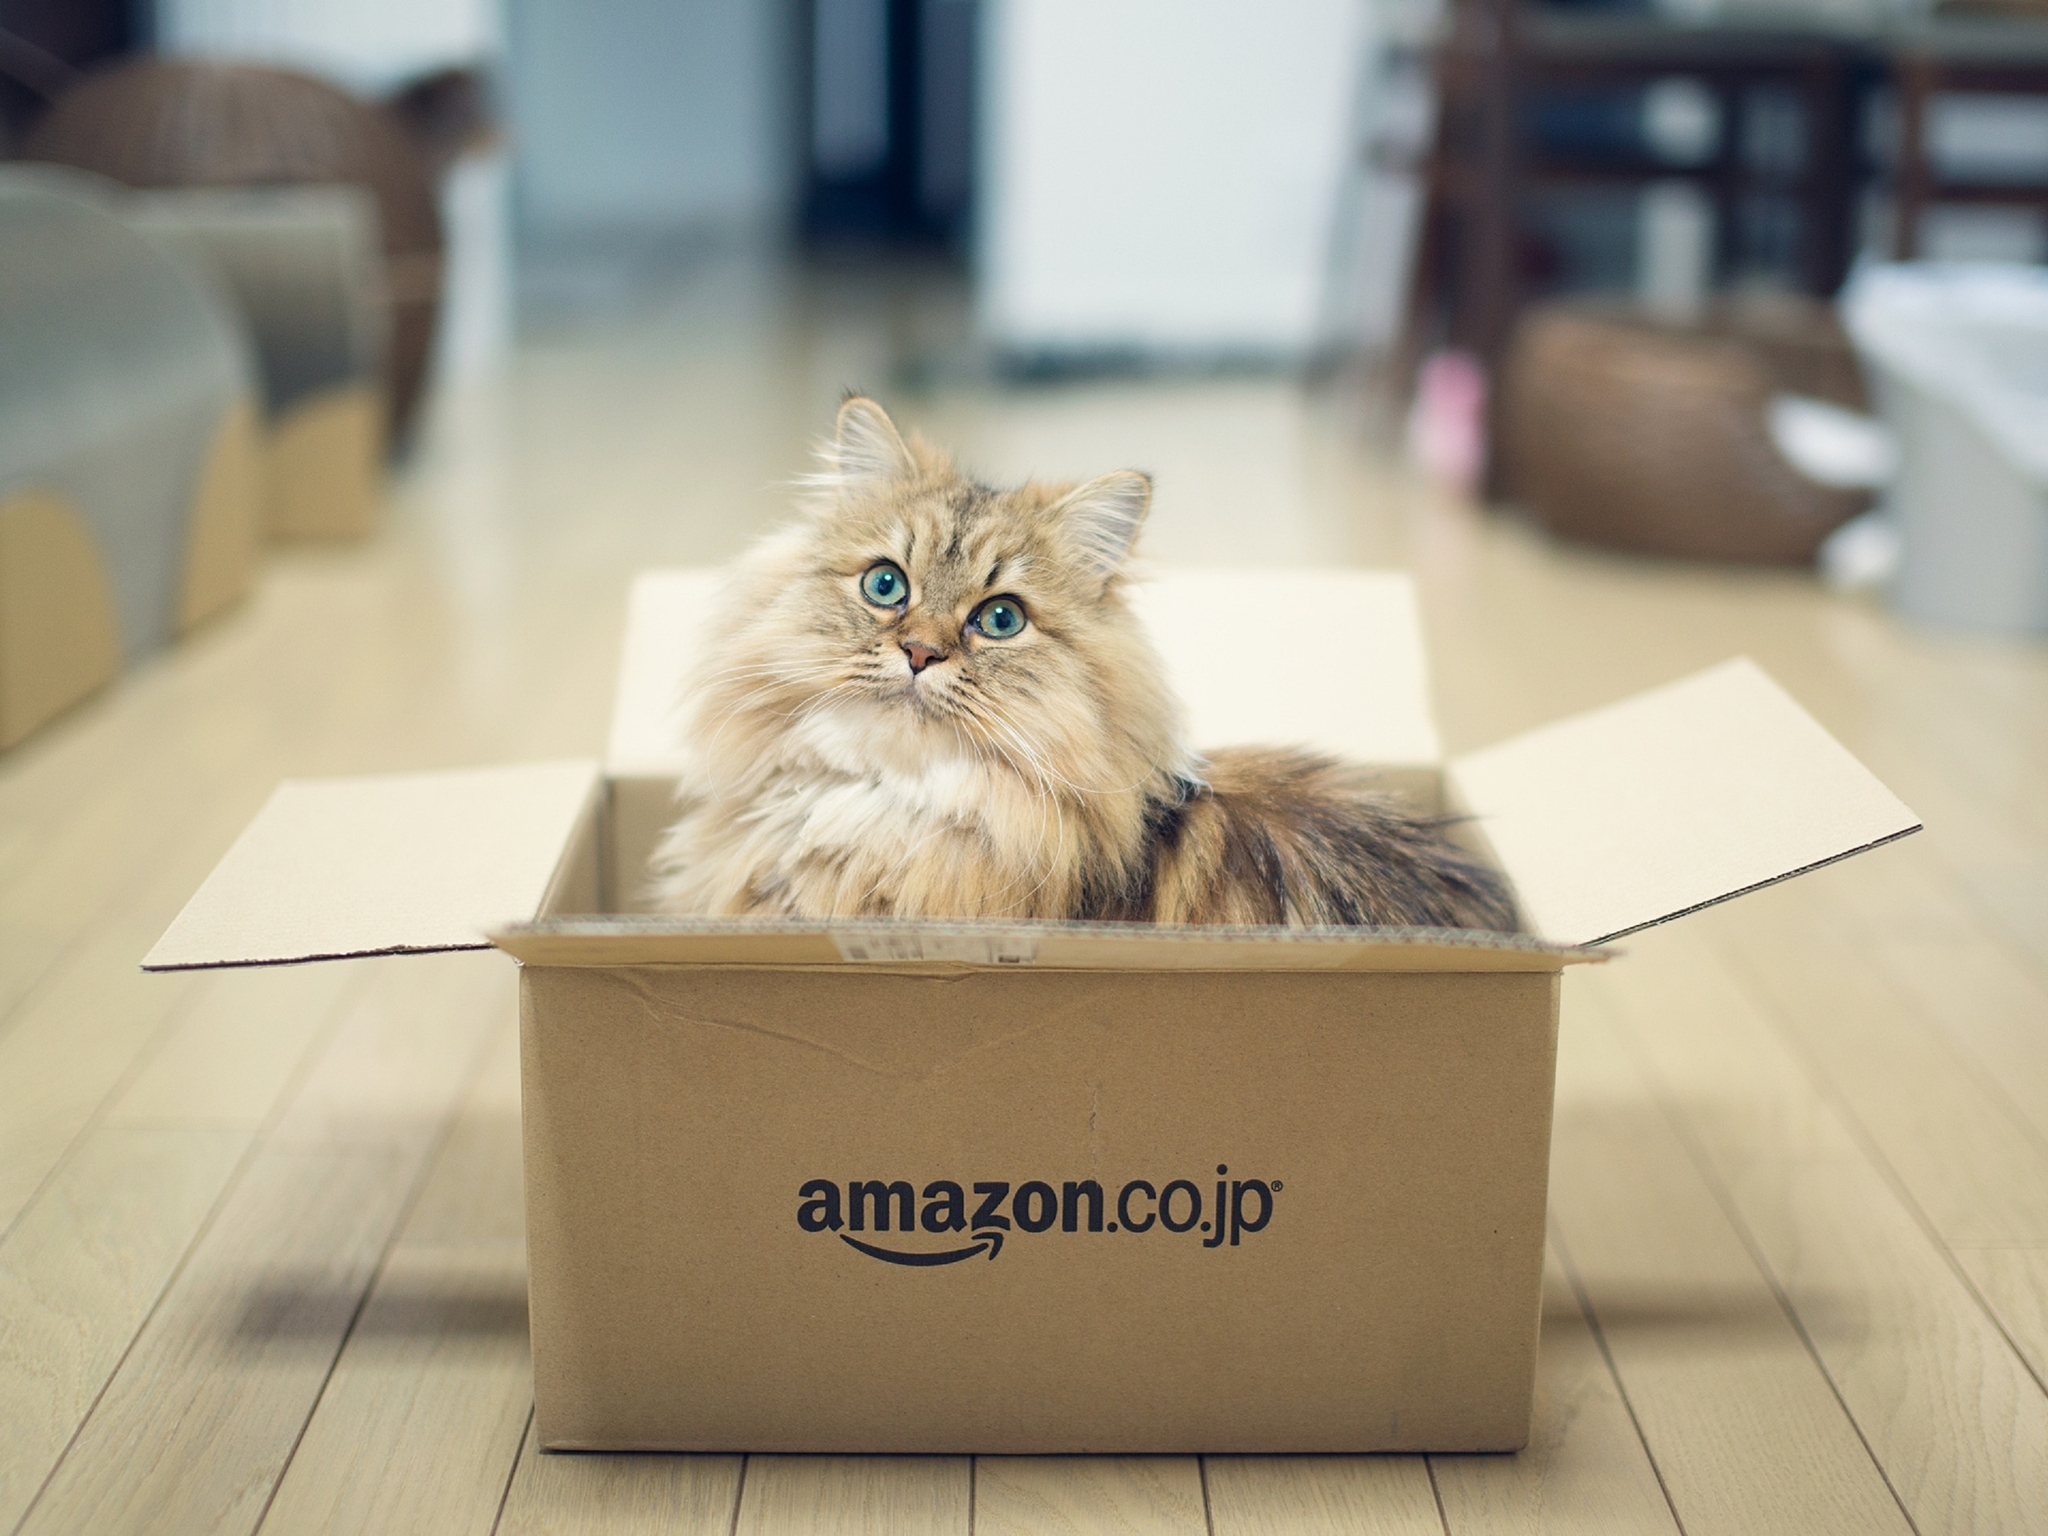 Картинка: Коробка, кошка, дом